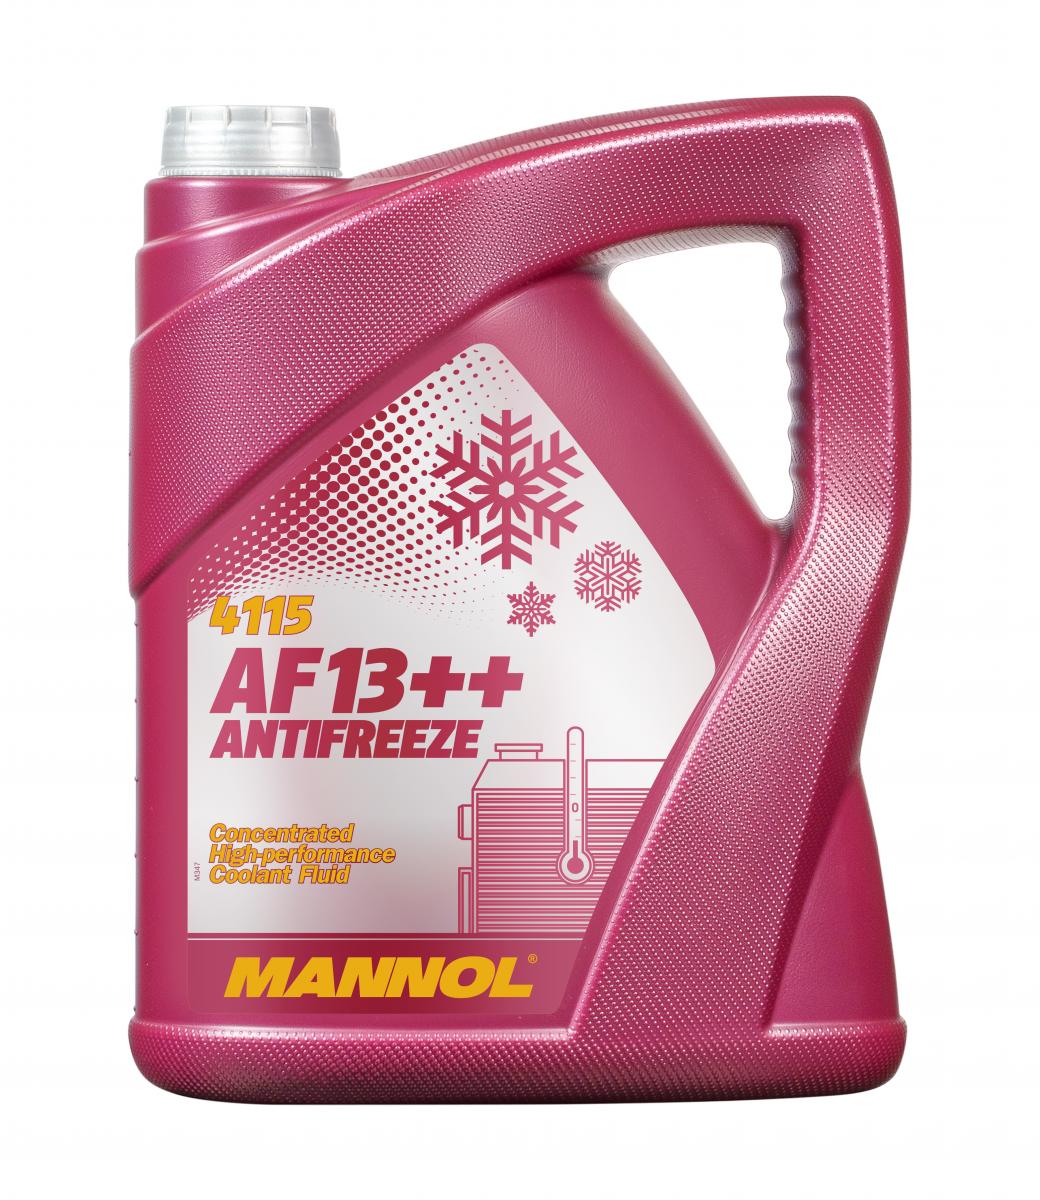 MANNOL 5 Liter Antifreeze AF13++ MN4115-5 Kühlerfrostschutz Frostschutzmittel Kühlmittel Rot	